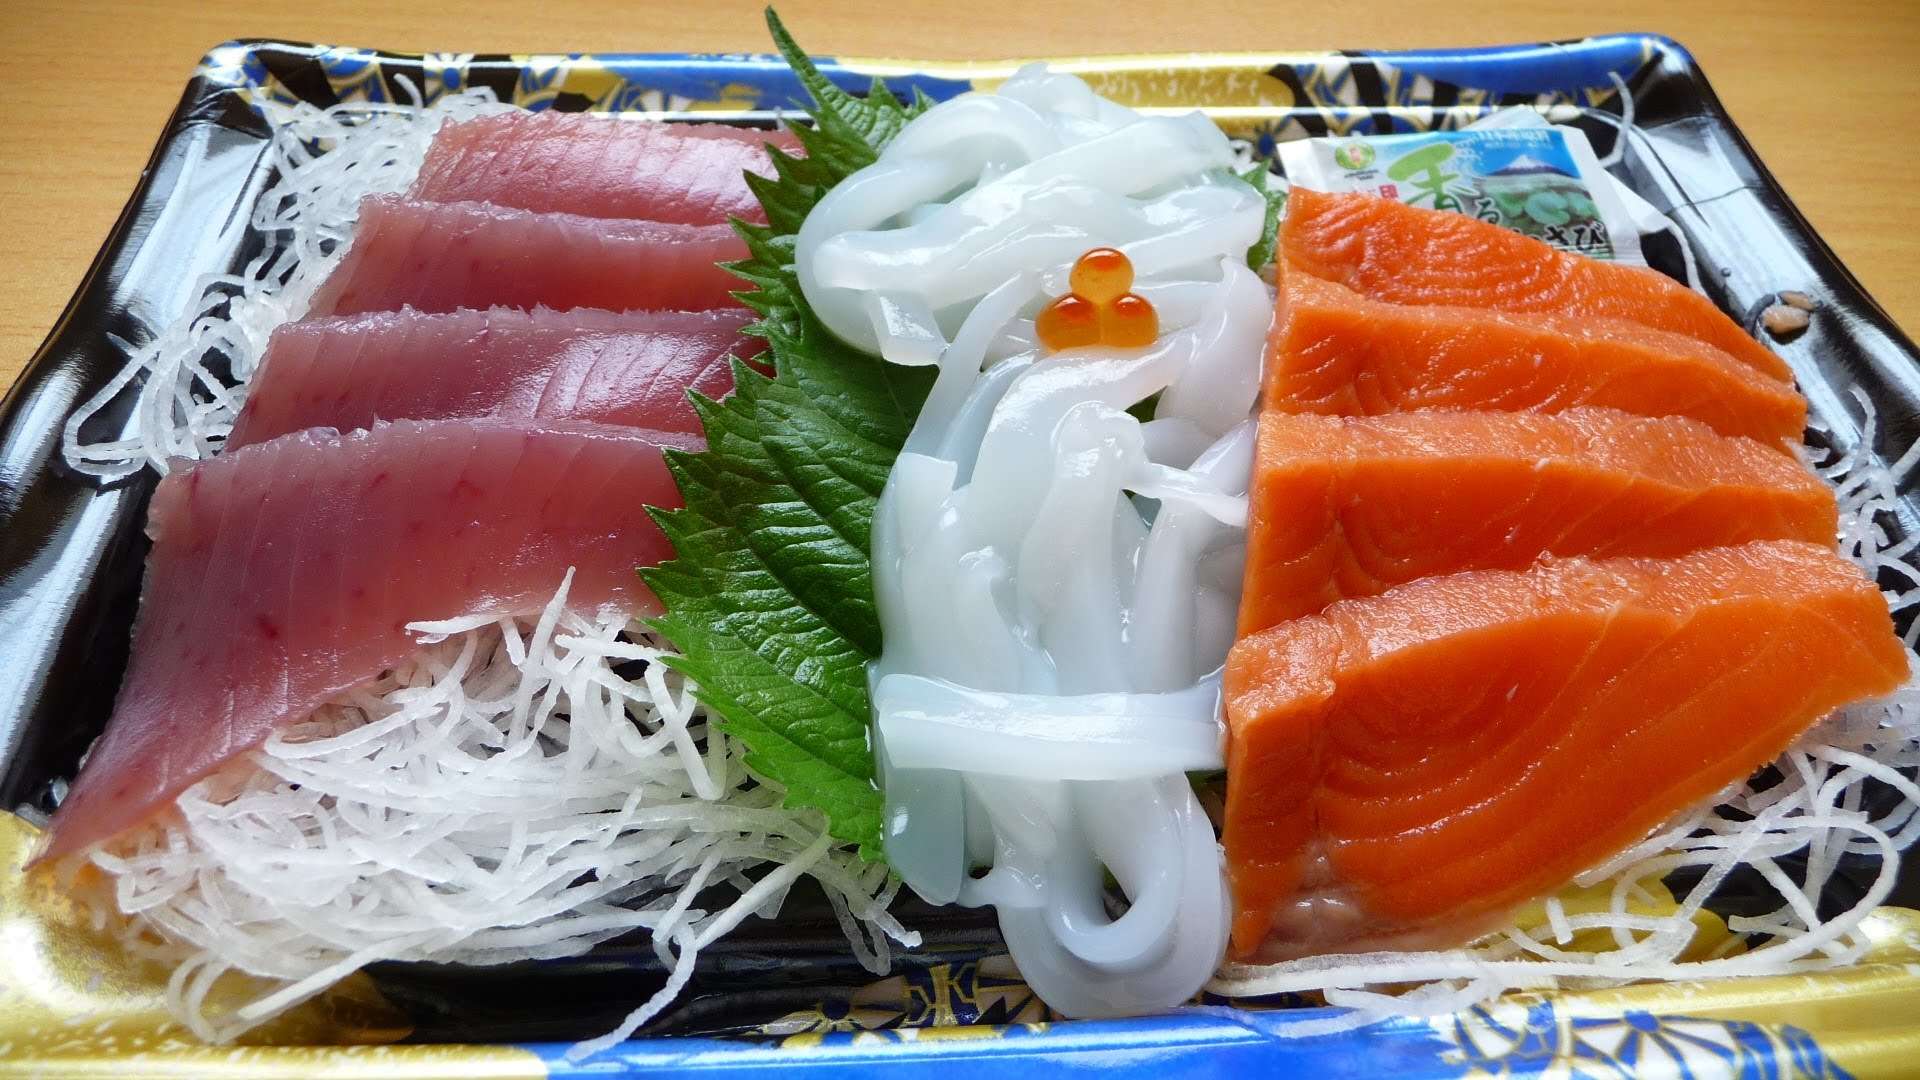 Sashimi được bày trí rất đẹp mắt với nhiều loại hải sản sống được thái thành những lát mỏng